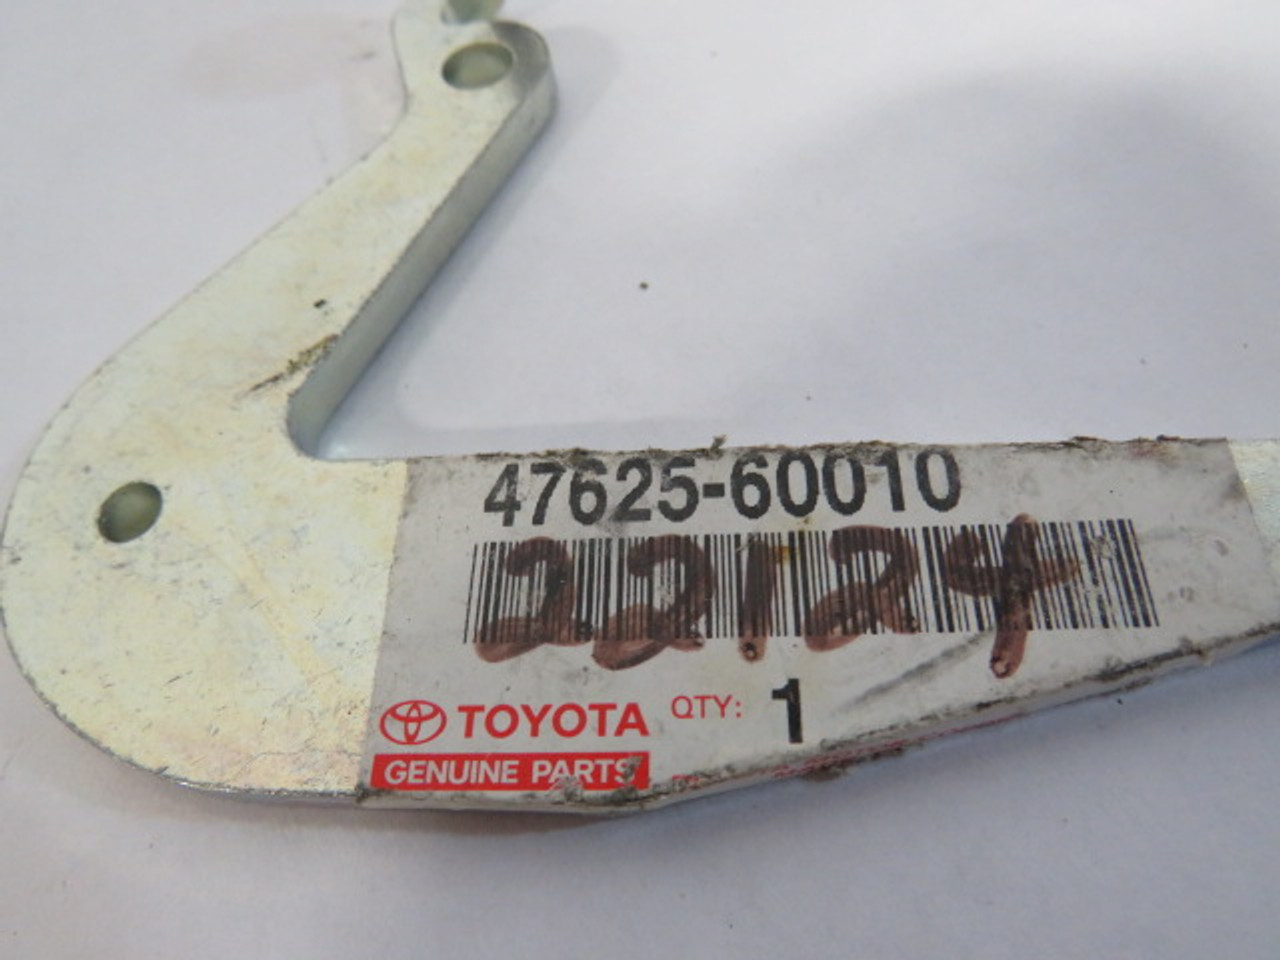 Toyota 47625-60010 Left Bell Crank for Parking Brake ! NOP !